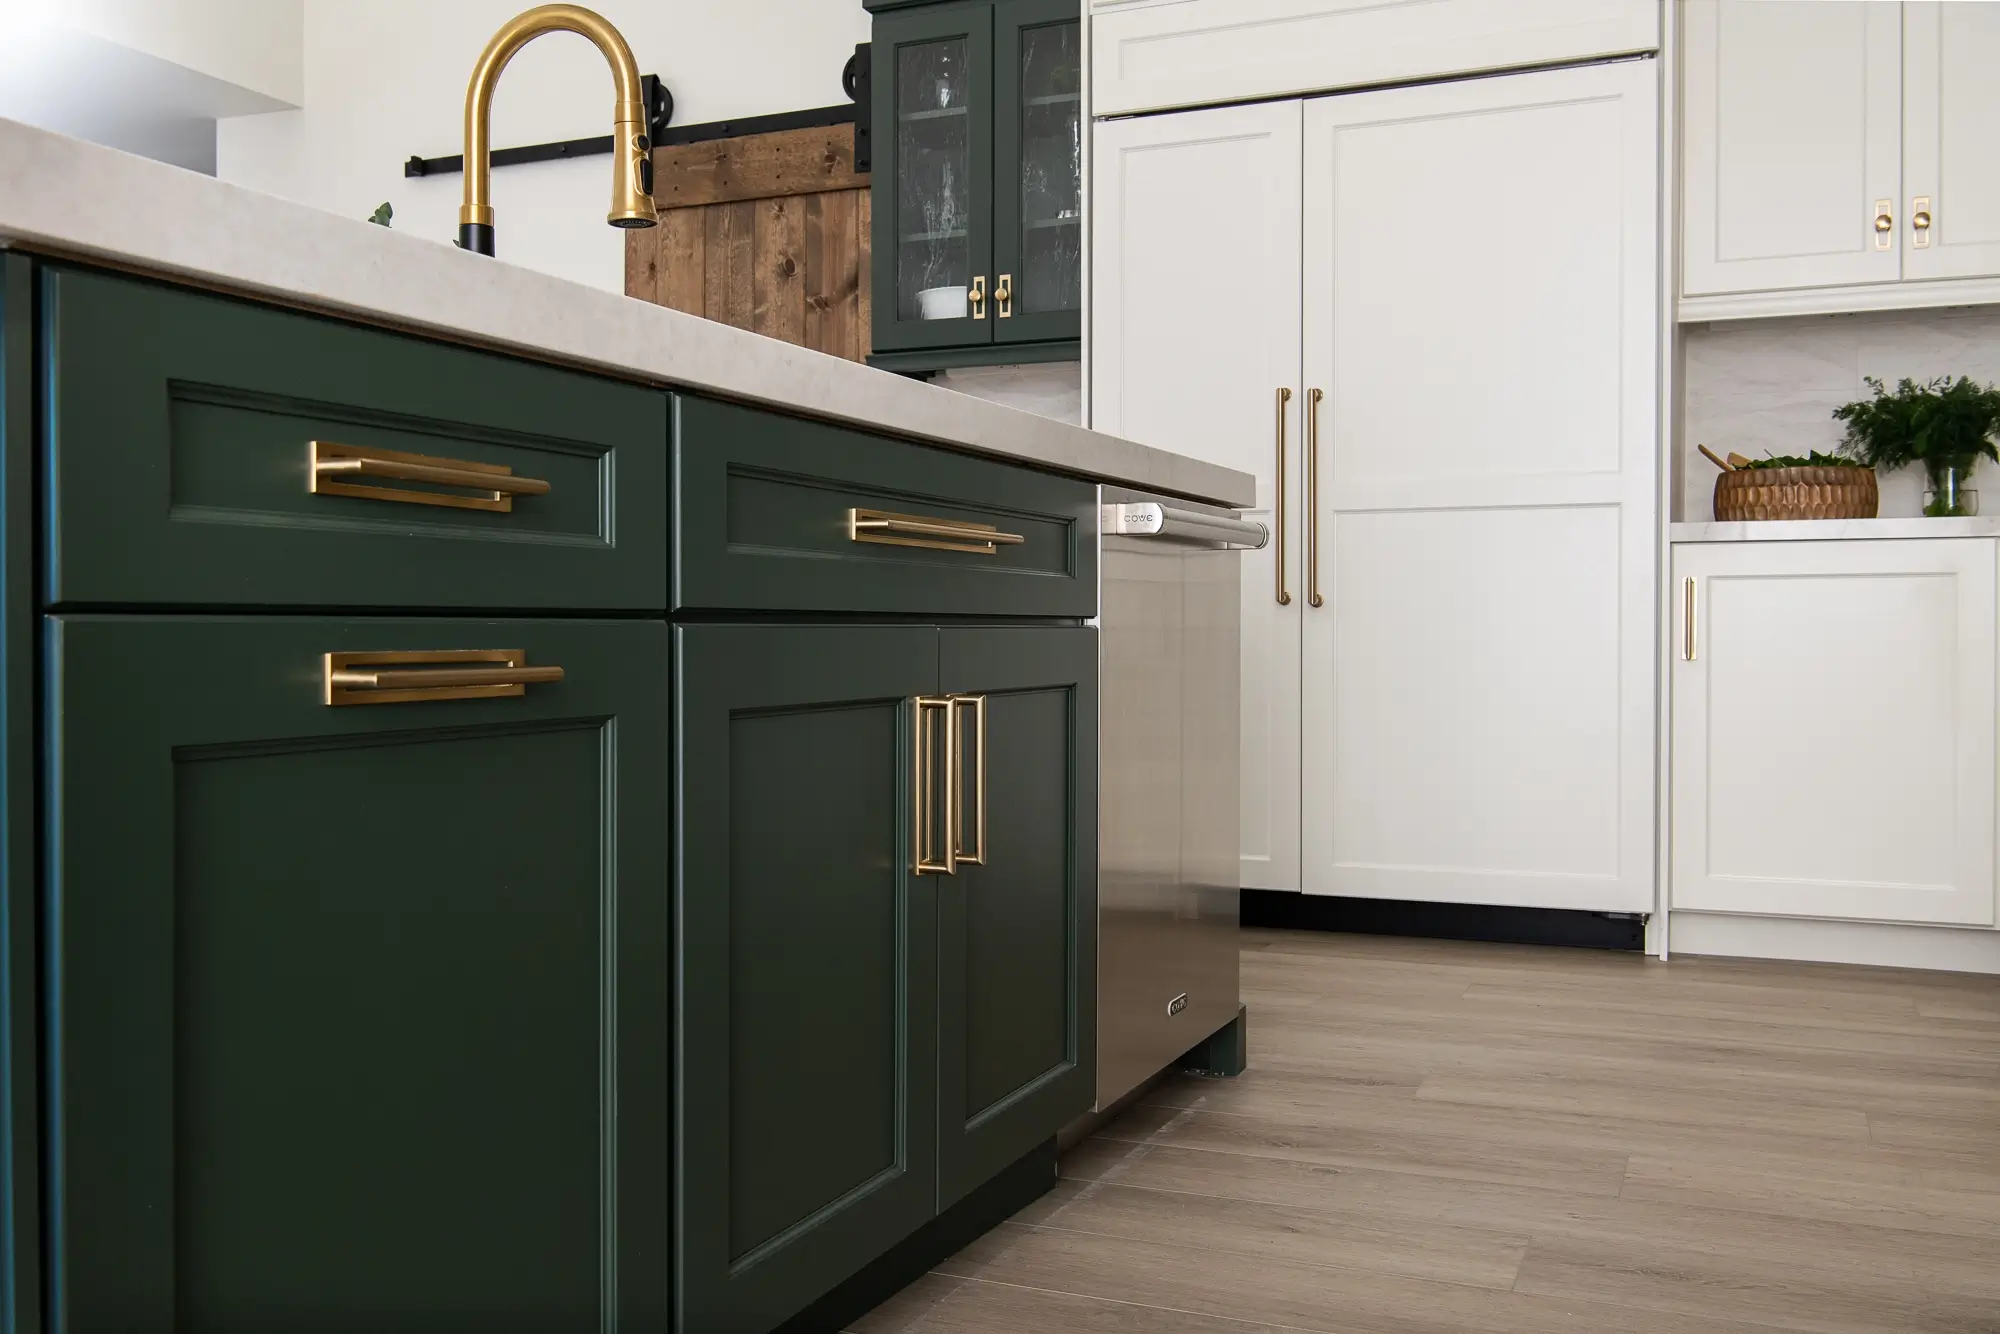 This kitchen renovation features plenty of kitchen storage near the sink zone